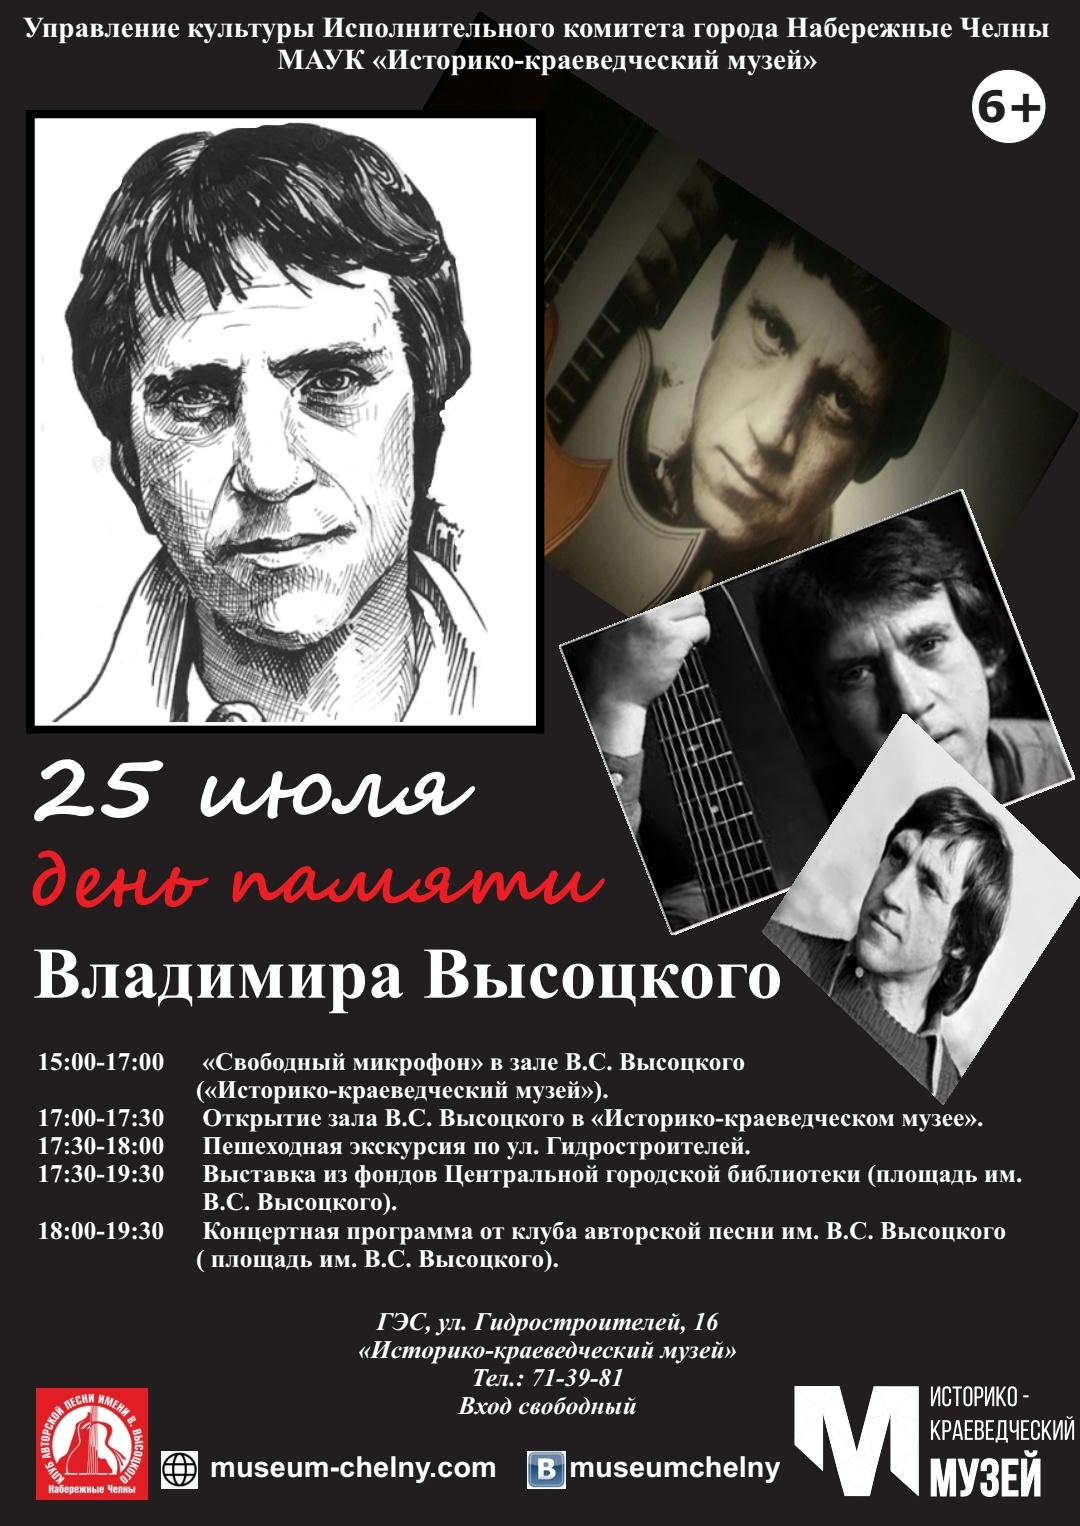 25 июля открытие выставки, посвящённой В.С. Высоцкому